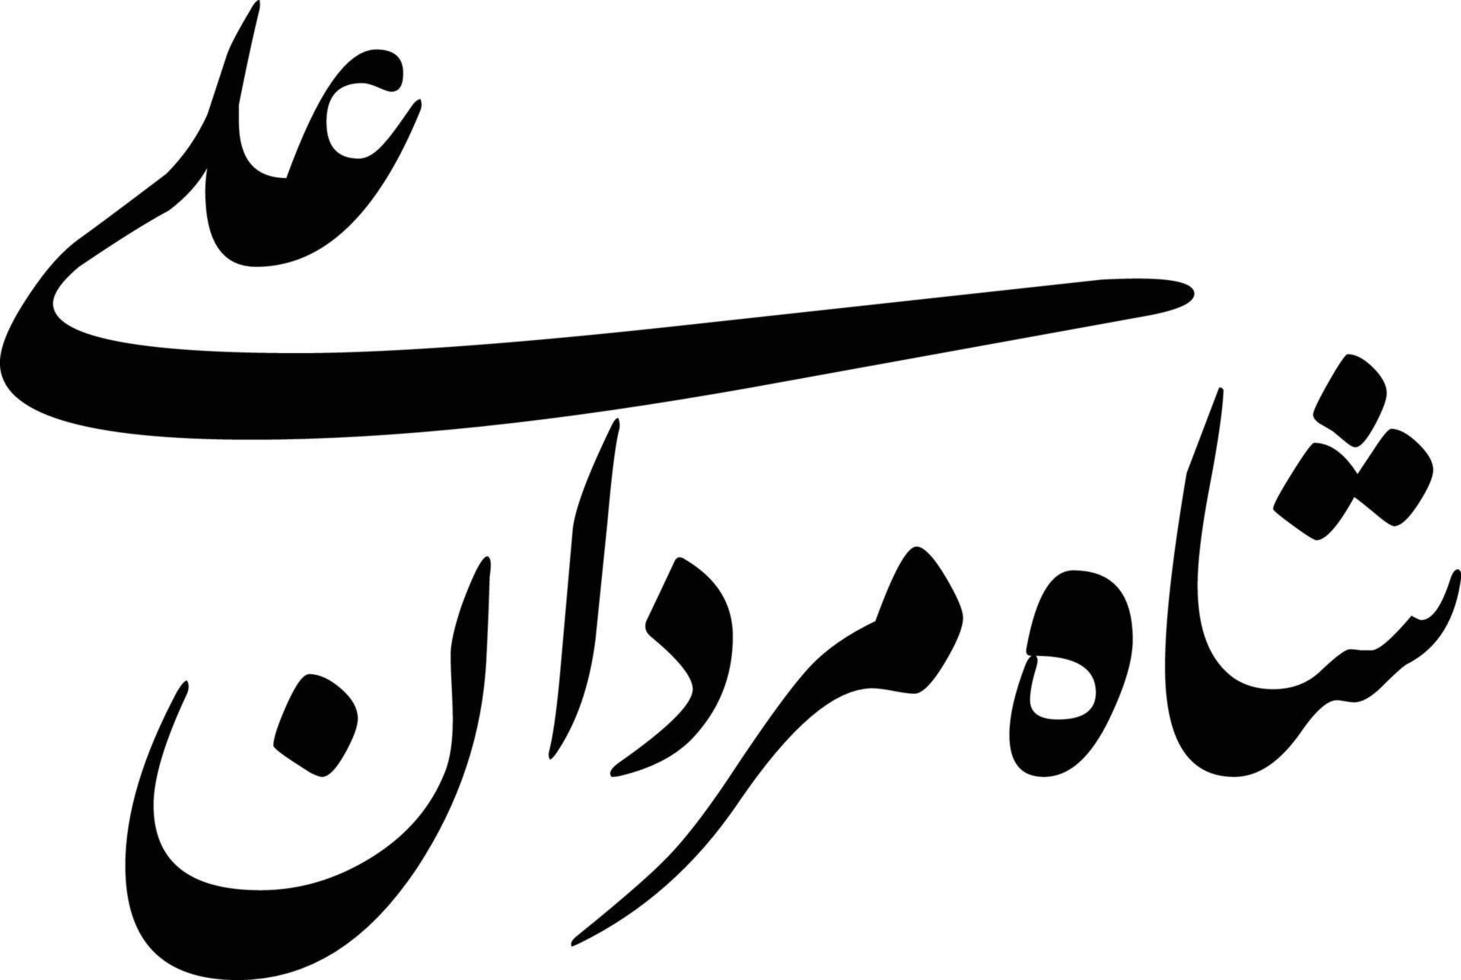 saha mardan ali titre islamique ourdou calligraphie arabe vecteur gratuit